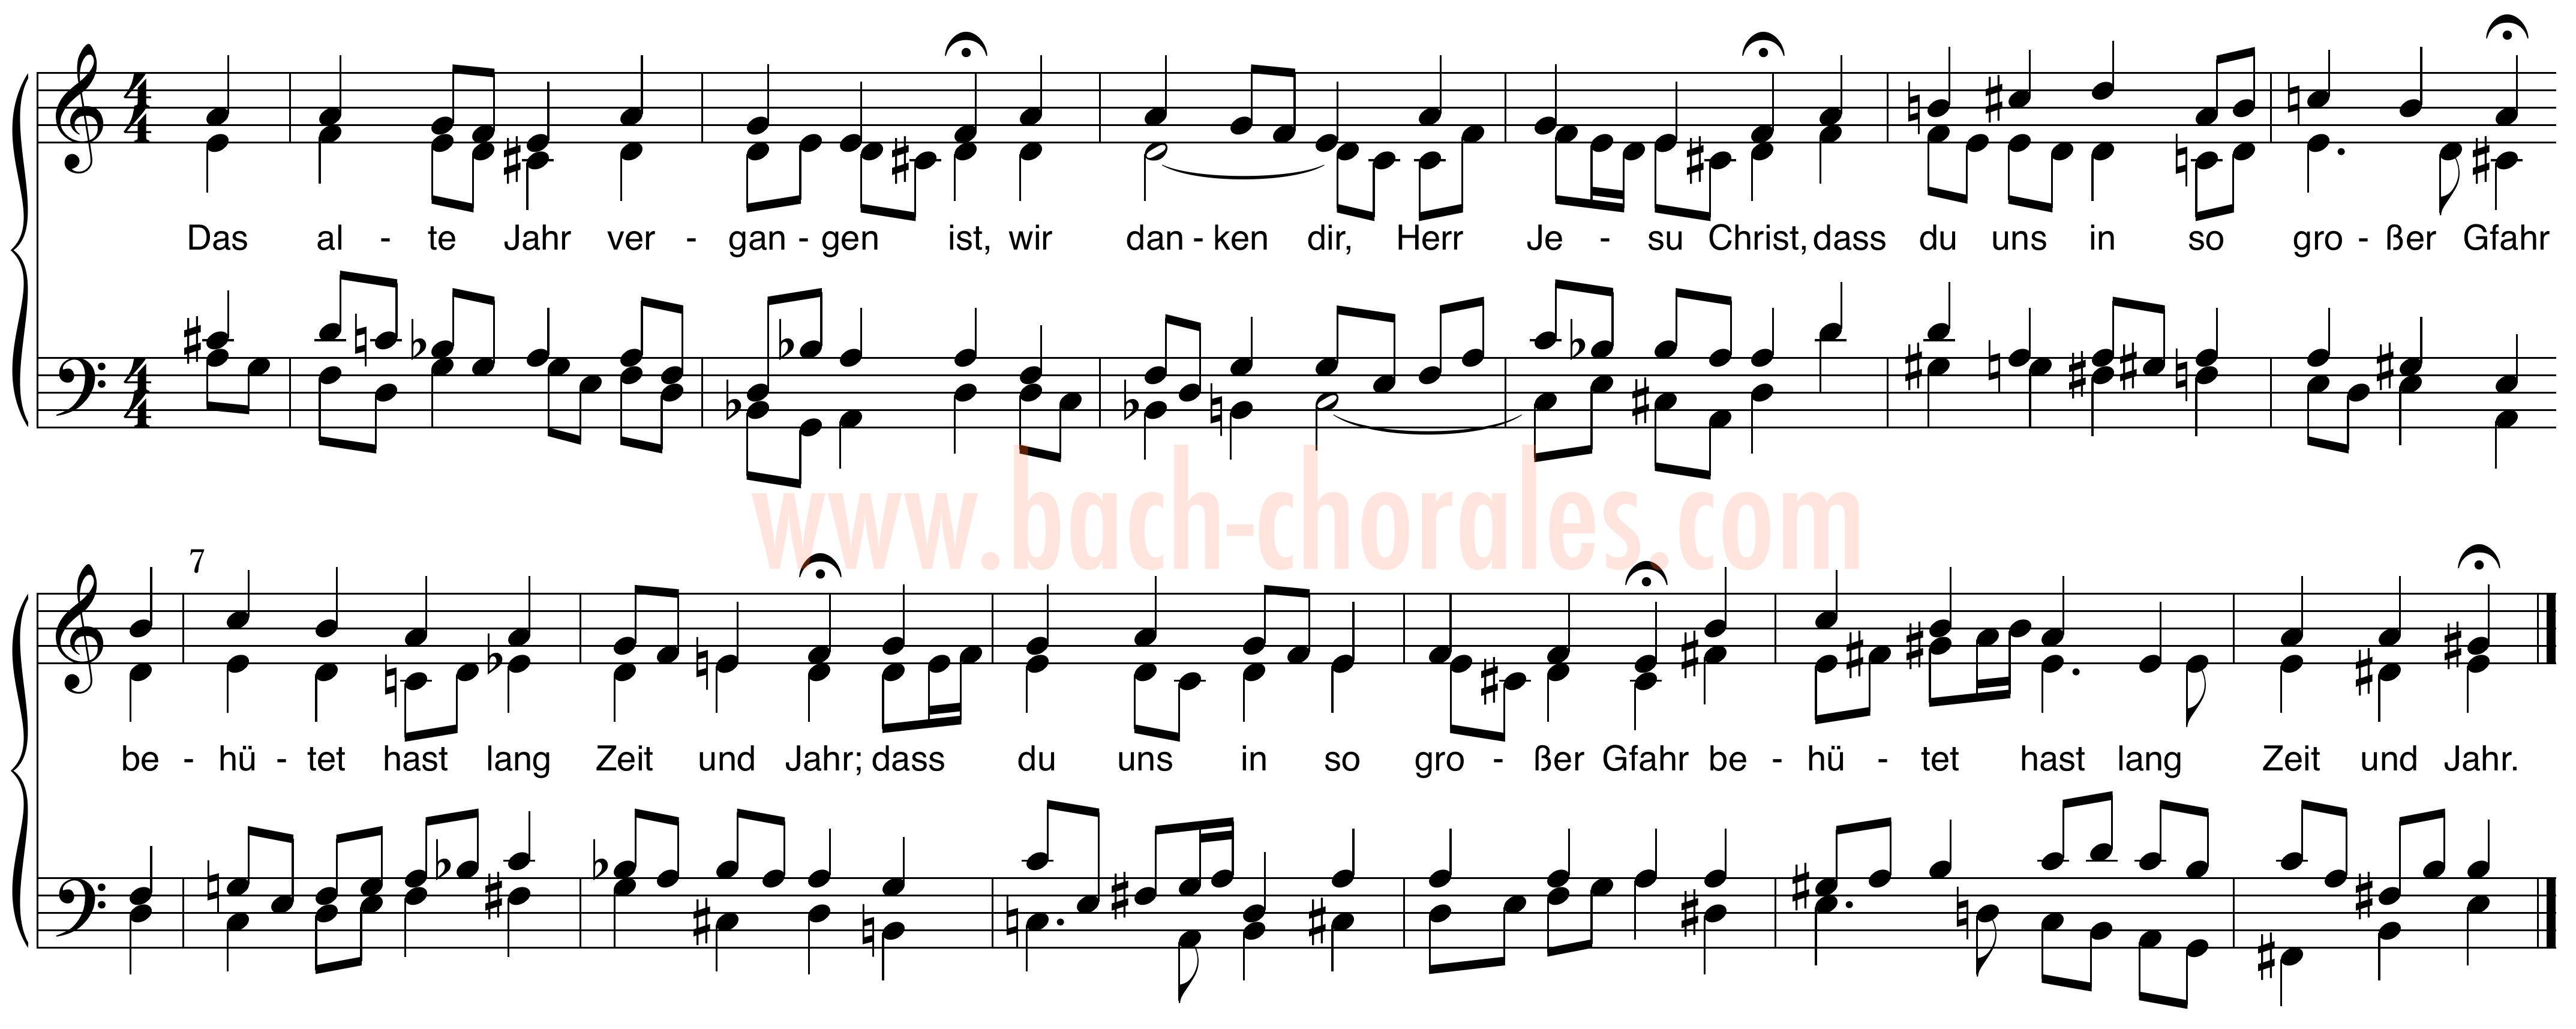 notenbeeld BWV 288 op https://www.bach-chorales.com/